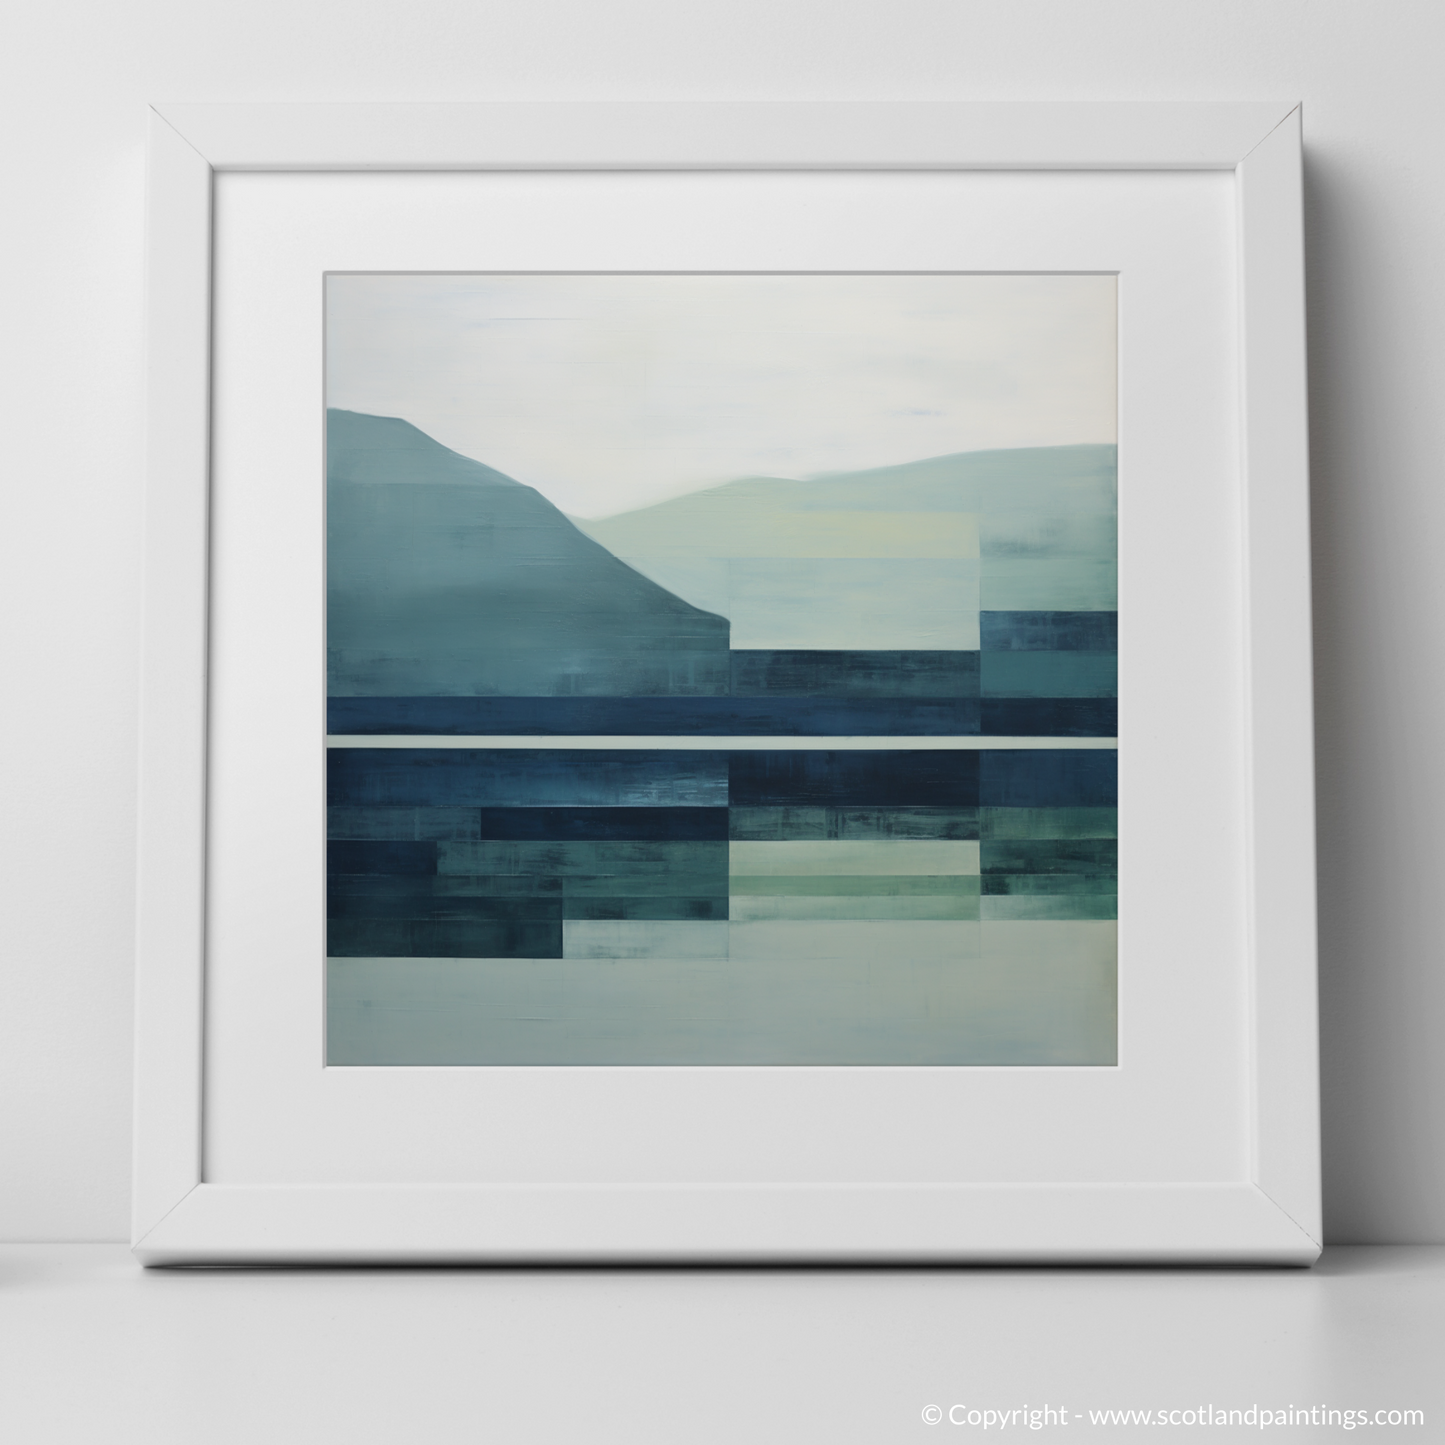 Highland Serenity: A Minimalist Ode to Loch Maree